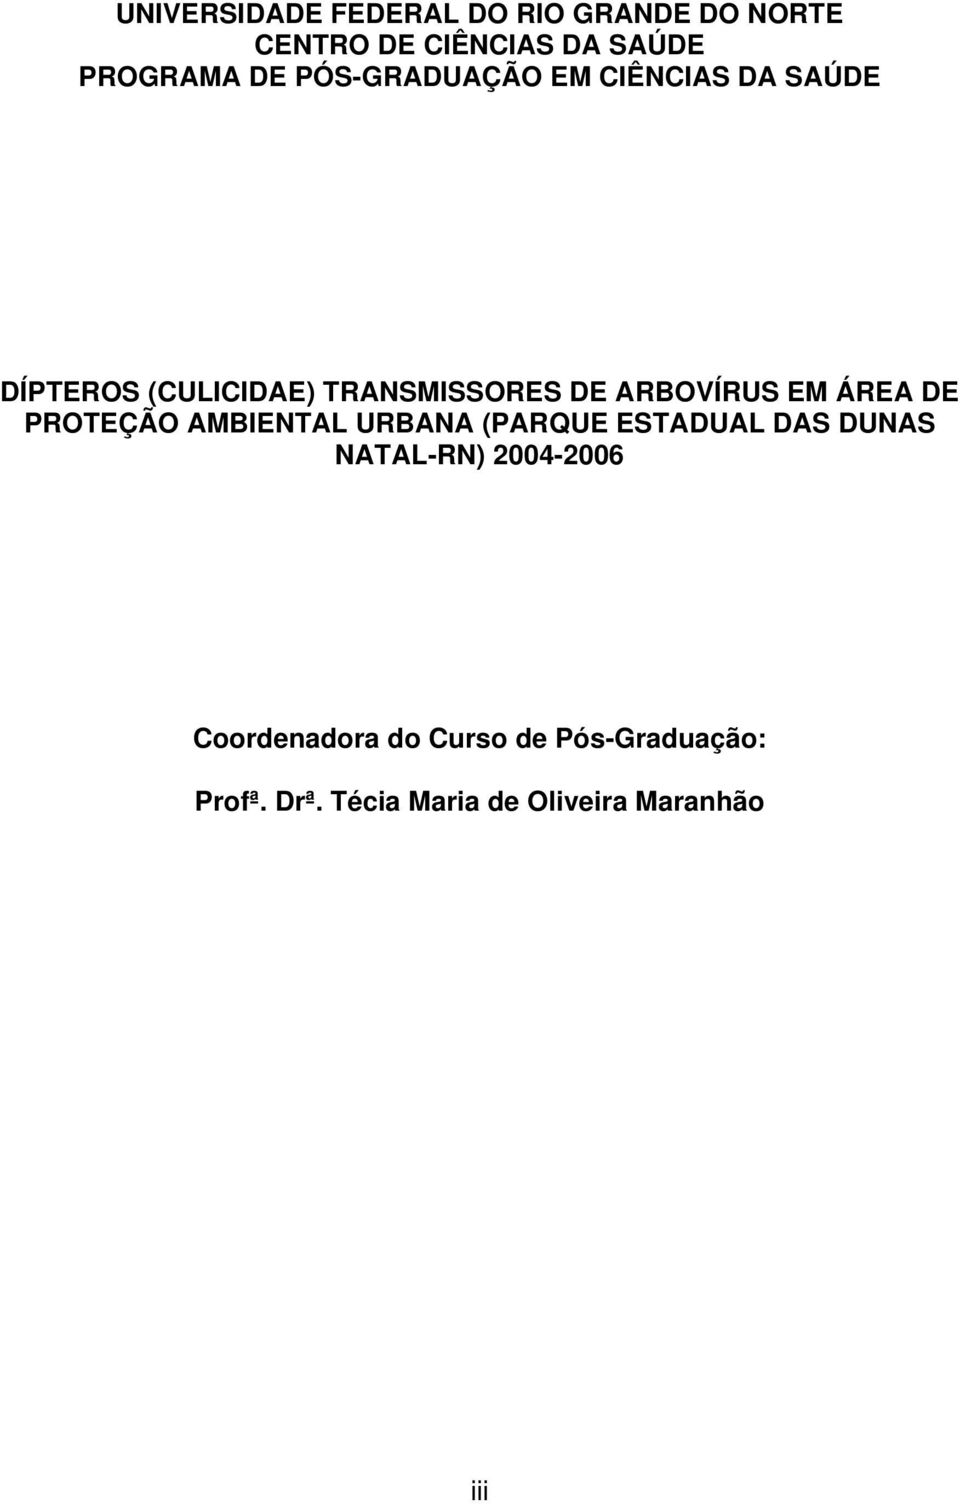 EM ÁREA DE PROTEÇÃO AMBIENTAL URBANA (PARQUE ESTADUAL DAS DUNAS NATAL-RN) 2004-2006